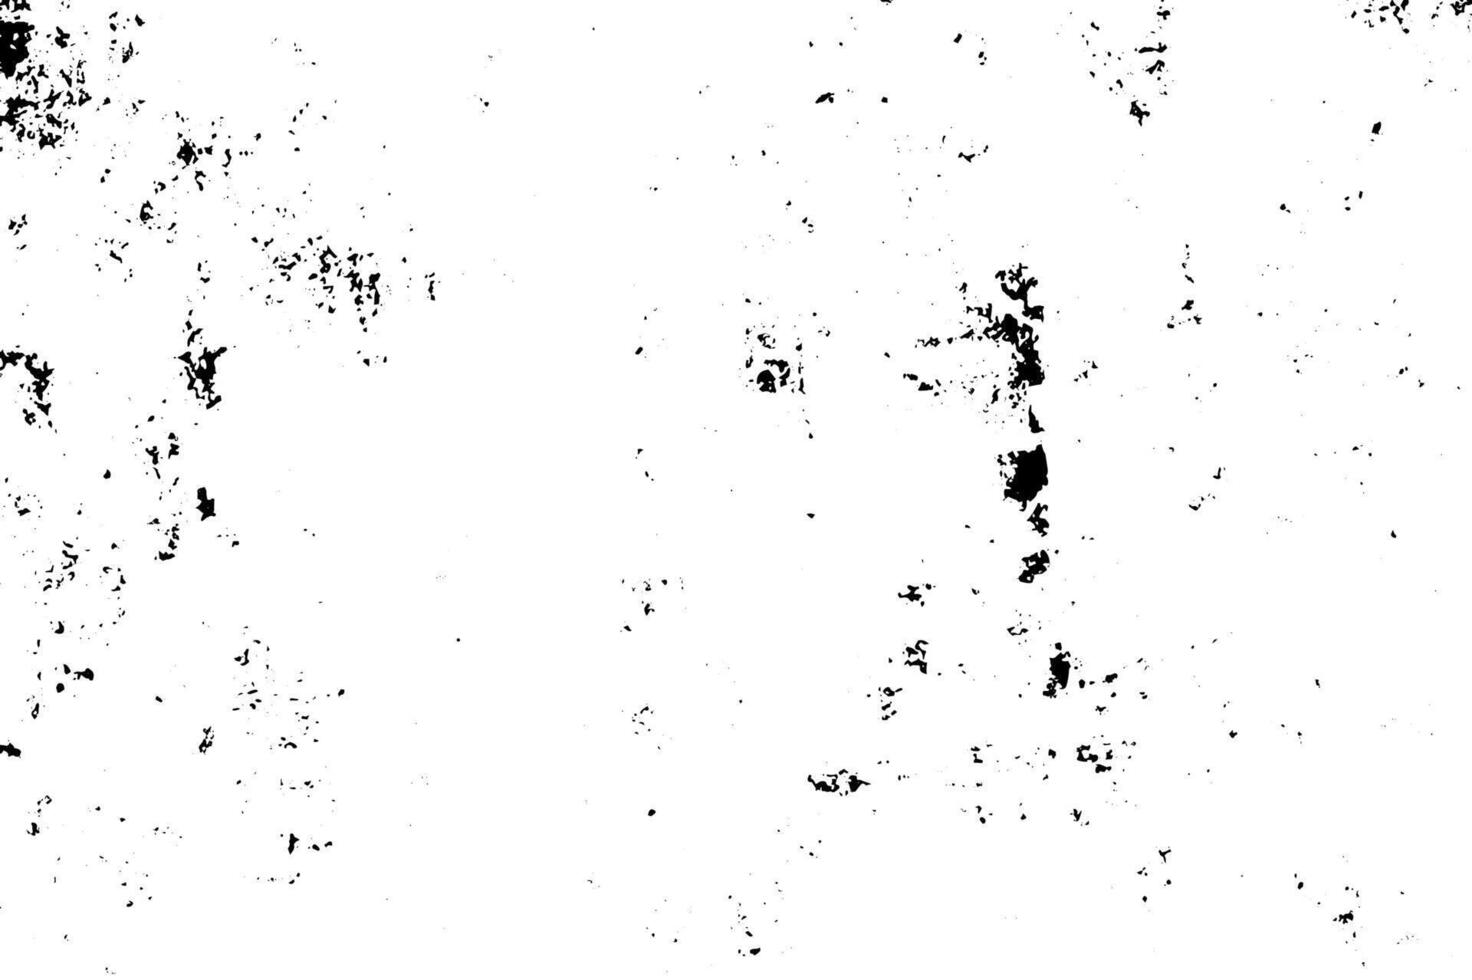 zwart en wit verontrust grunge bedekking structuur . abstract patroon van monochroom vuil patroon met inkt vlekken, scheuren, vlekken creatief ontwerp. vector